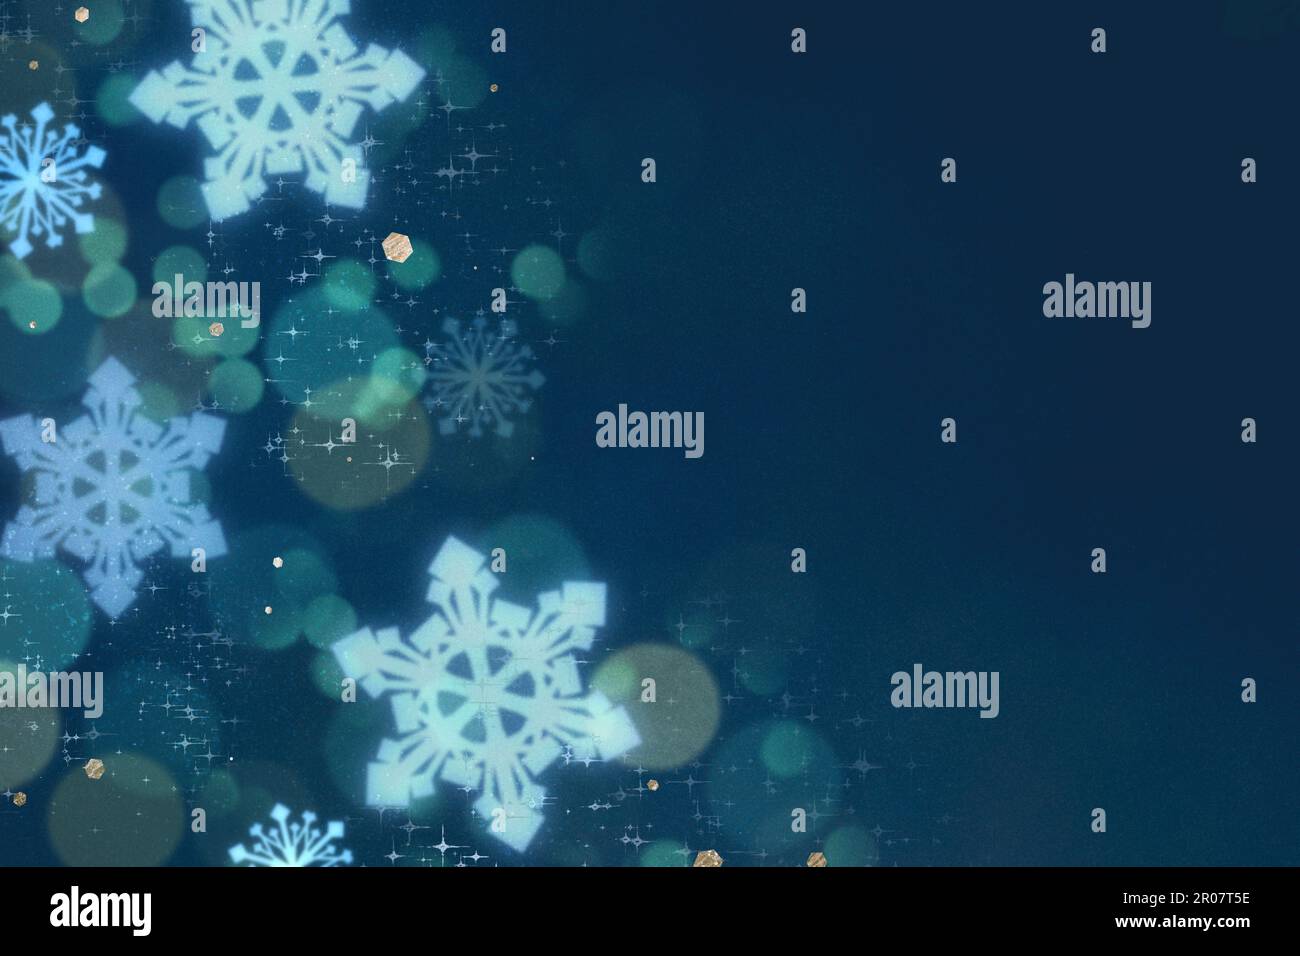 Modèle de résumé d'hiver. Flocons de neige et paillettes de bokeh sur fond vert foncé. Concept de Noël froid Banque D'Images